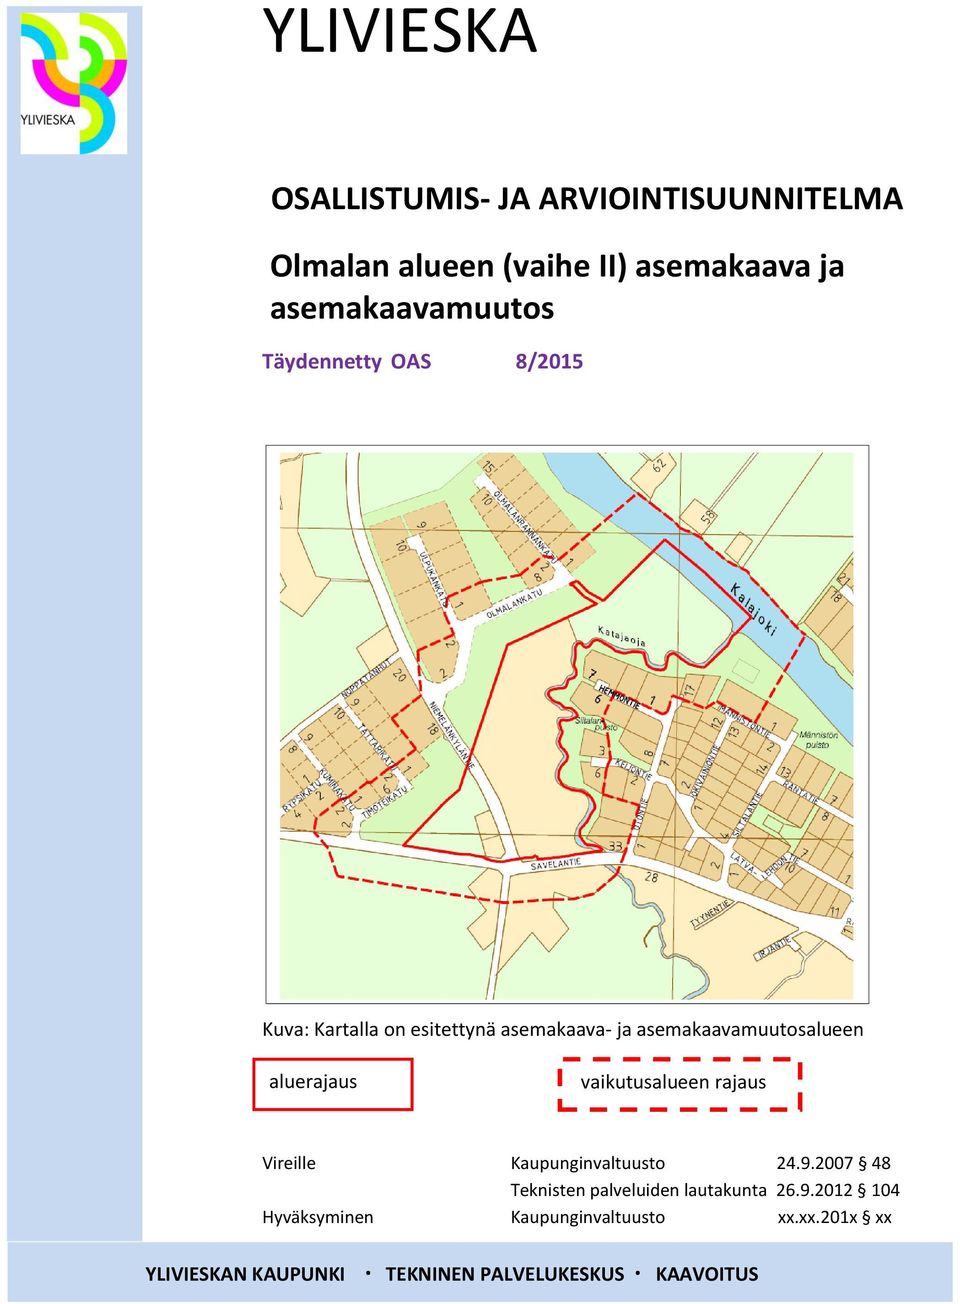 asemakaavamuutosalueen aluerajaus vaikutusalueen rajaus Vireille Kaupunginvaltuusto 24.9.